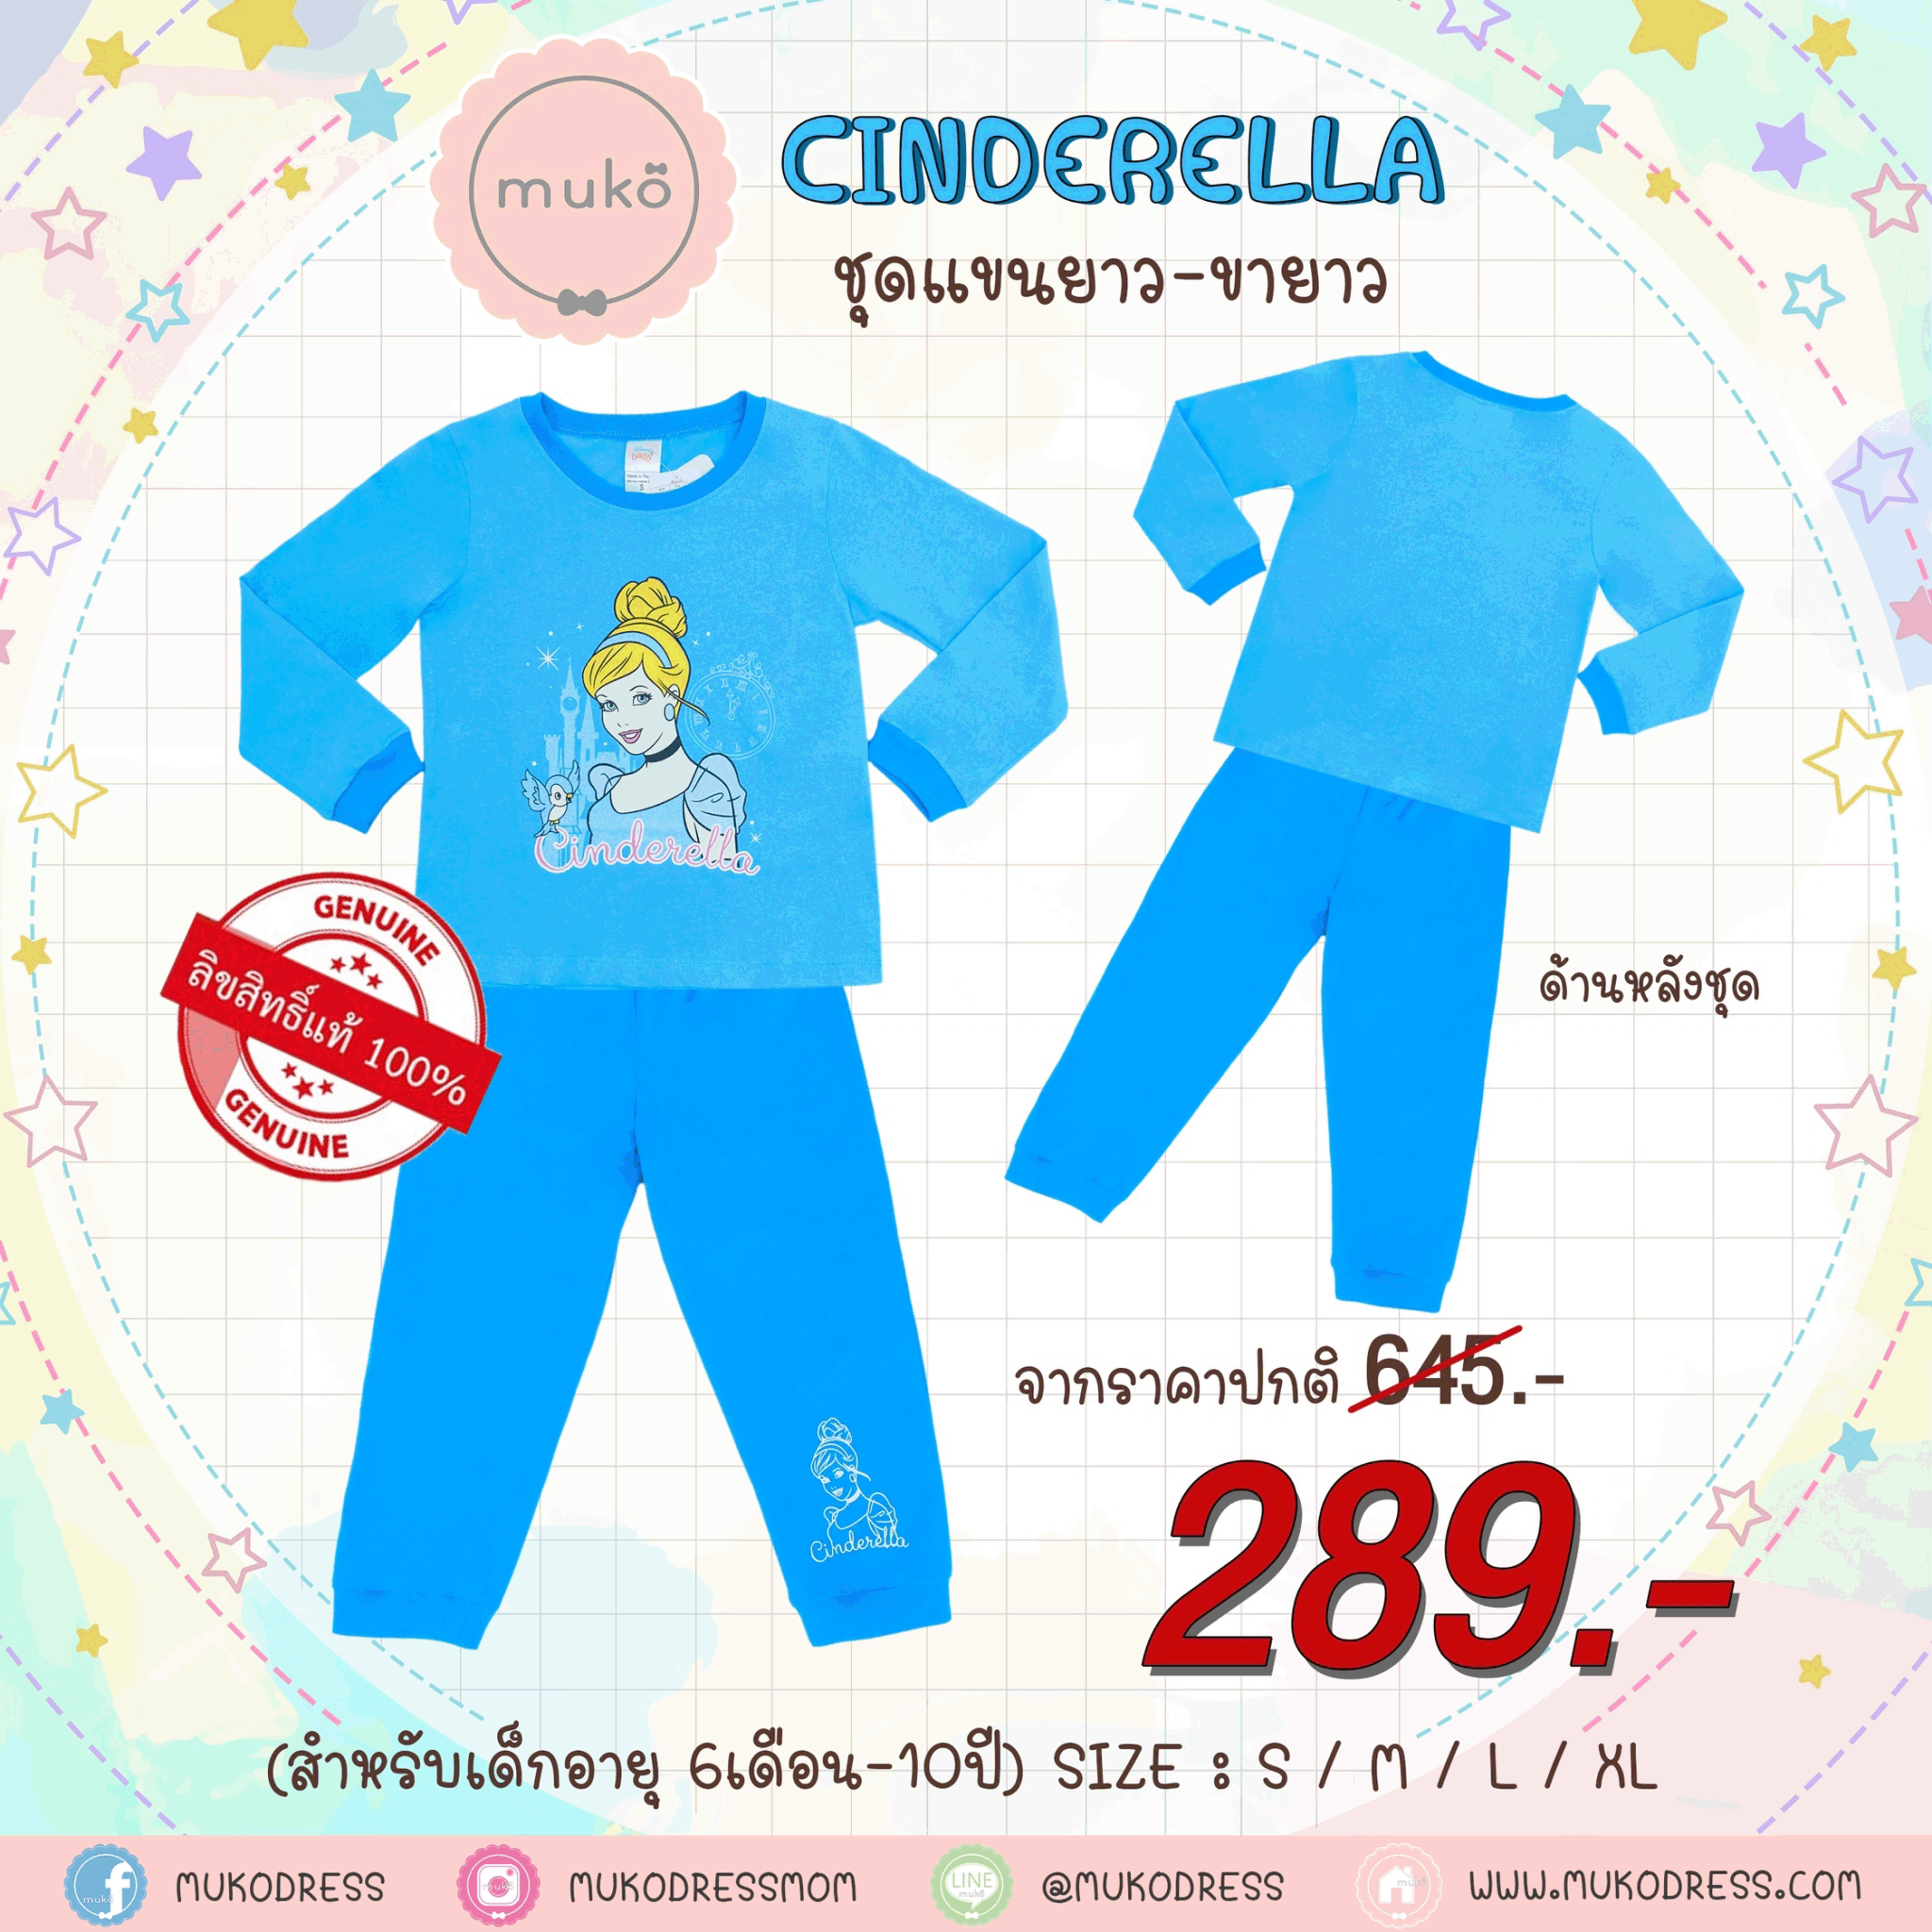 ชุดเด็ก 7-10 ขวบ แขนยาว-ขายาว (Size XL) DPC127-05-XL-Blue XL ลาย เจ้าหญิงซินเดอเรลล่า Cinderella สีฟ้า (เจ้าหญิงและนกน้อย)